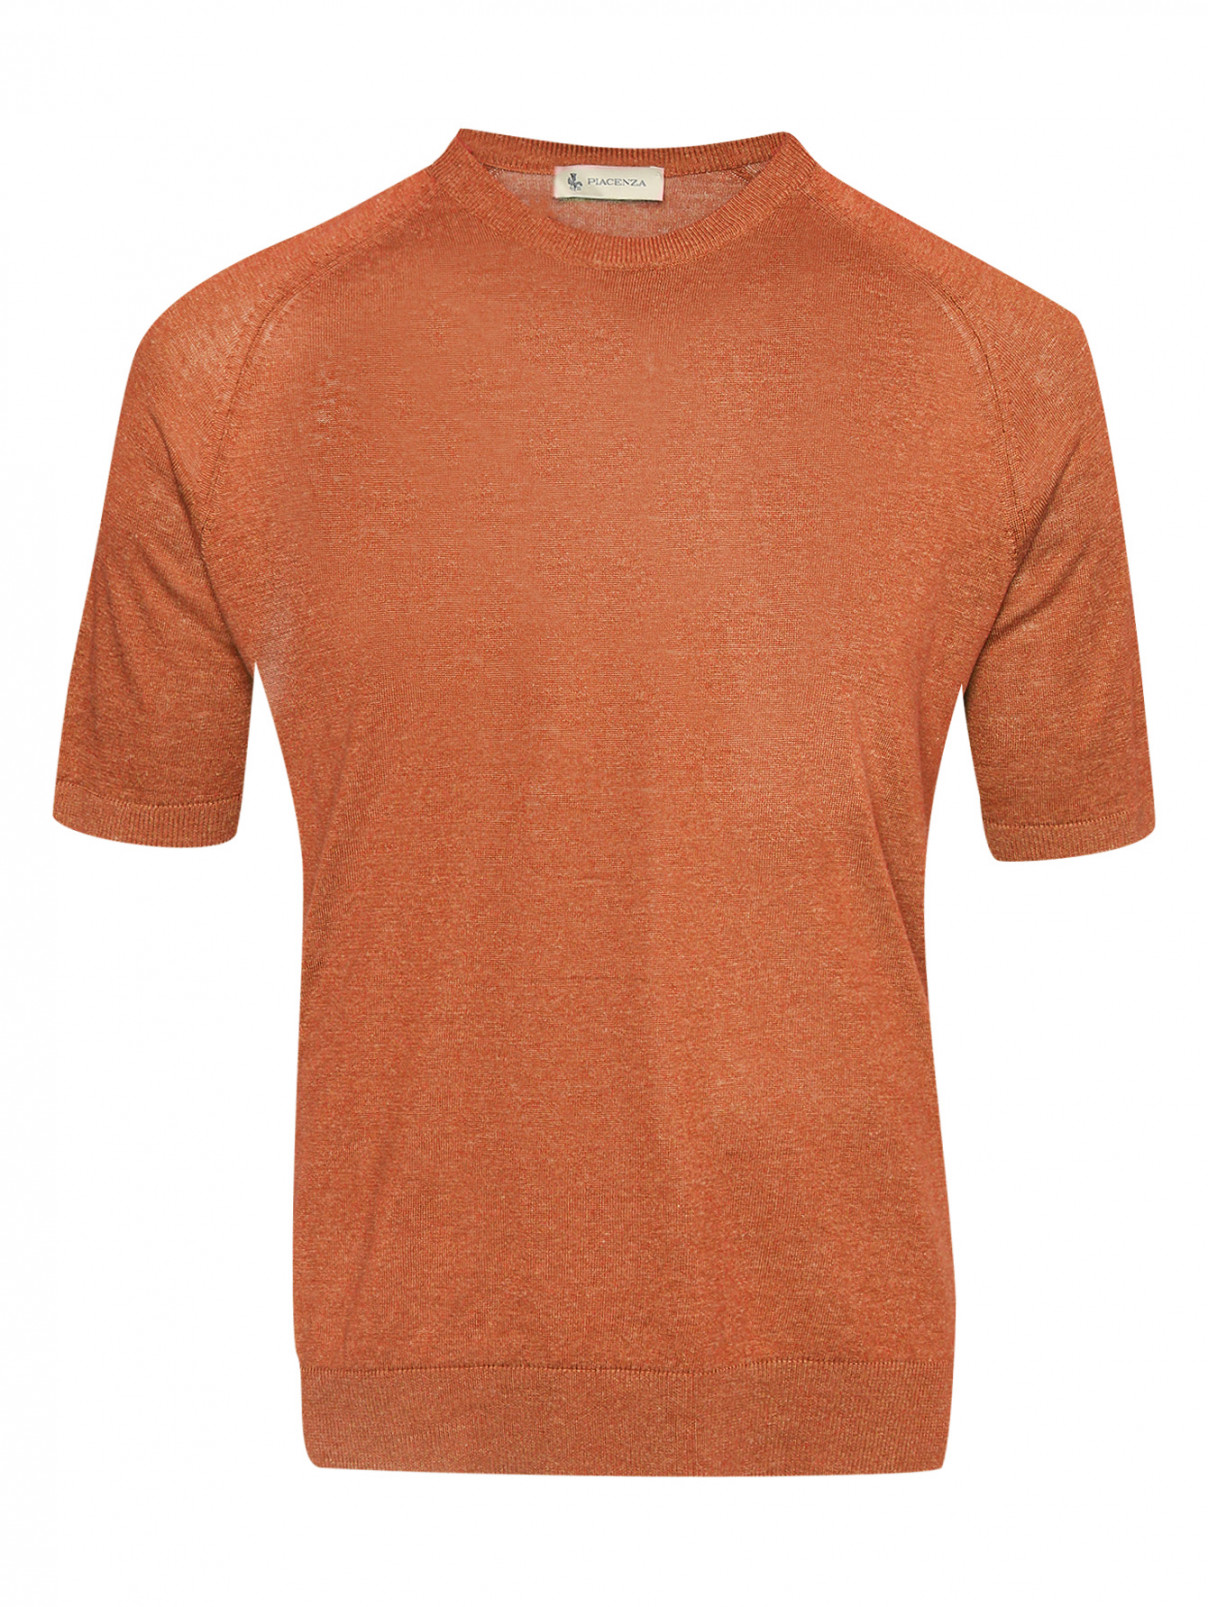 Джемпер из шелка и льна с короткими рукавами Piacenza Cashmere  –  Общий вид  – Цвет:  Оранжевый